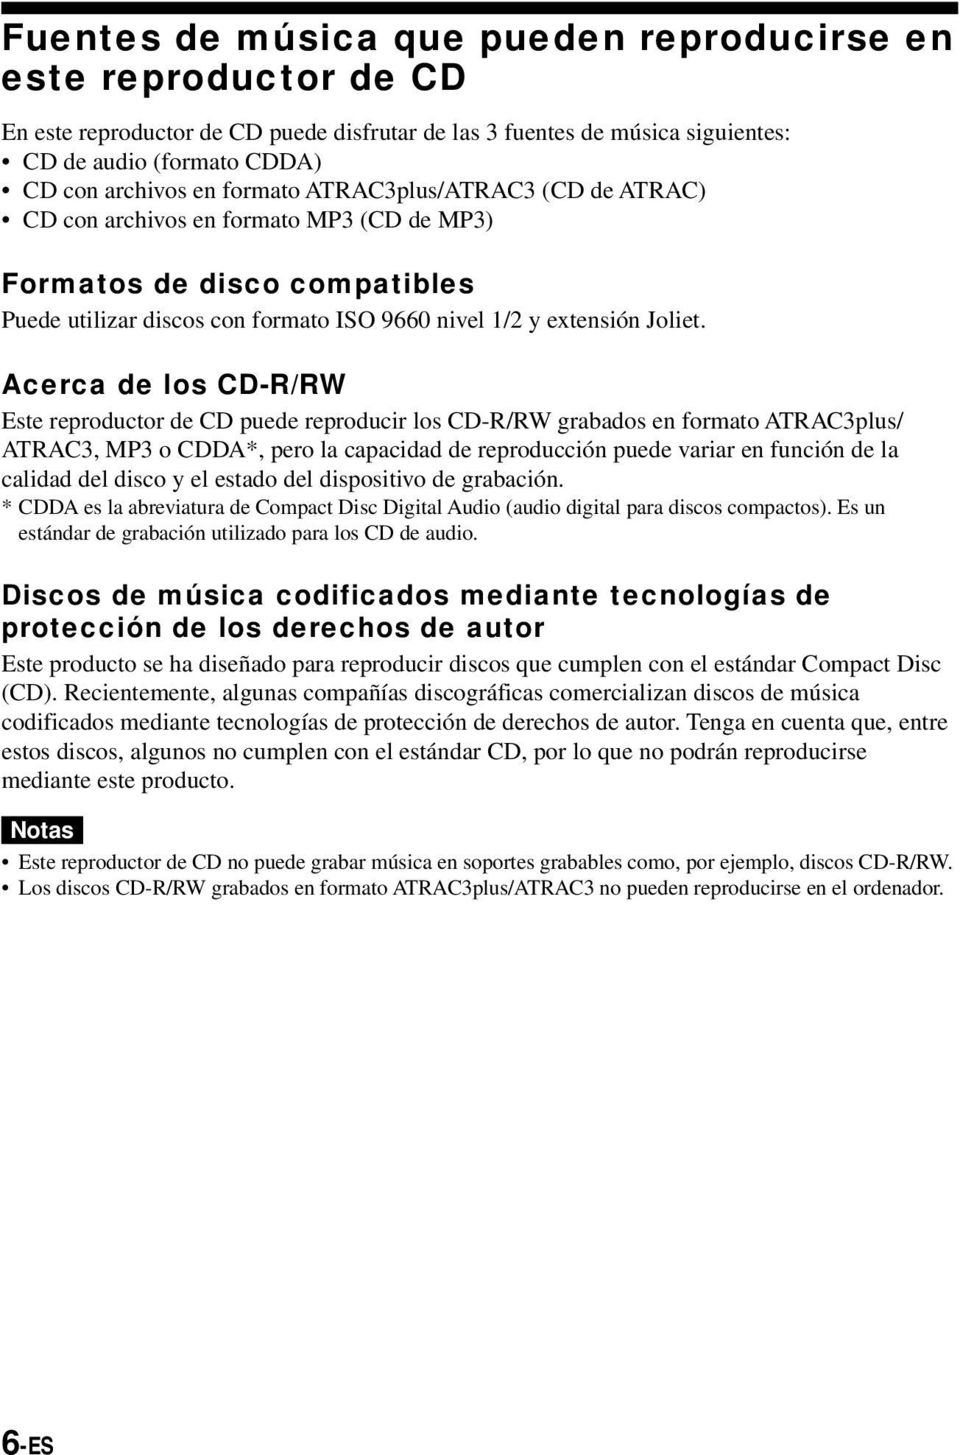 Acerca de los CD-R/RW Este reproductor de CD puede reproducir los CD-R/RW grabados en formato ATRAC3plus/ ATRAC3, MP3 o CDDA*, pero la capacidad de reproducción puede variar en función de la calidad